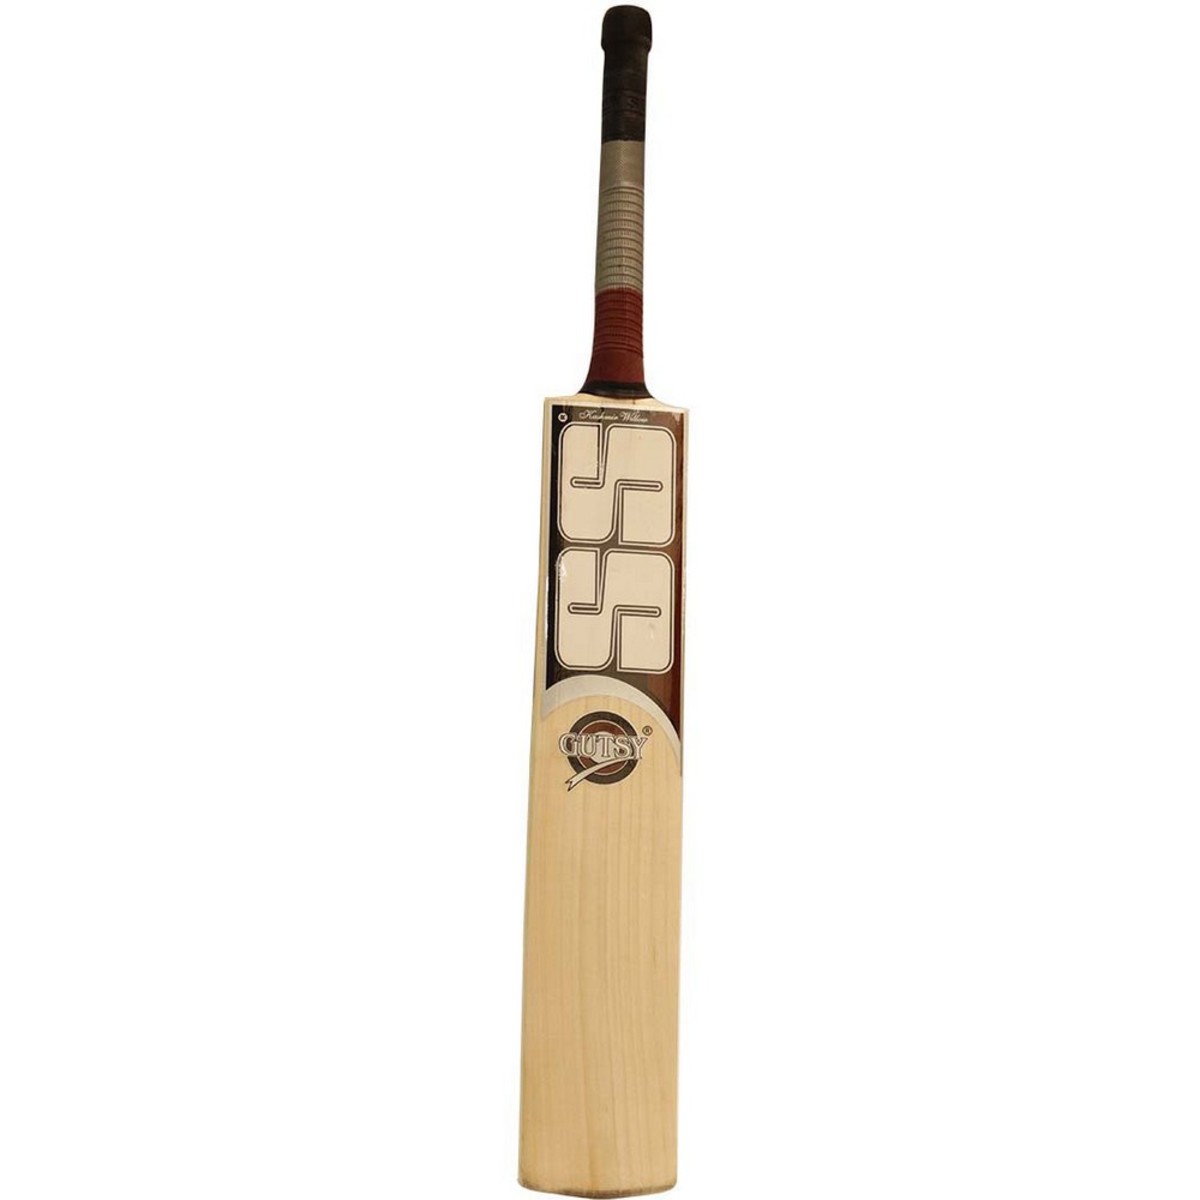 SS Cricket Bat Gutsy 10010033